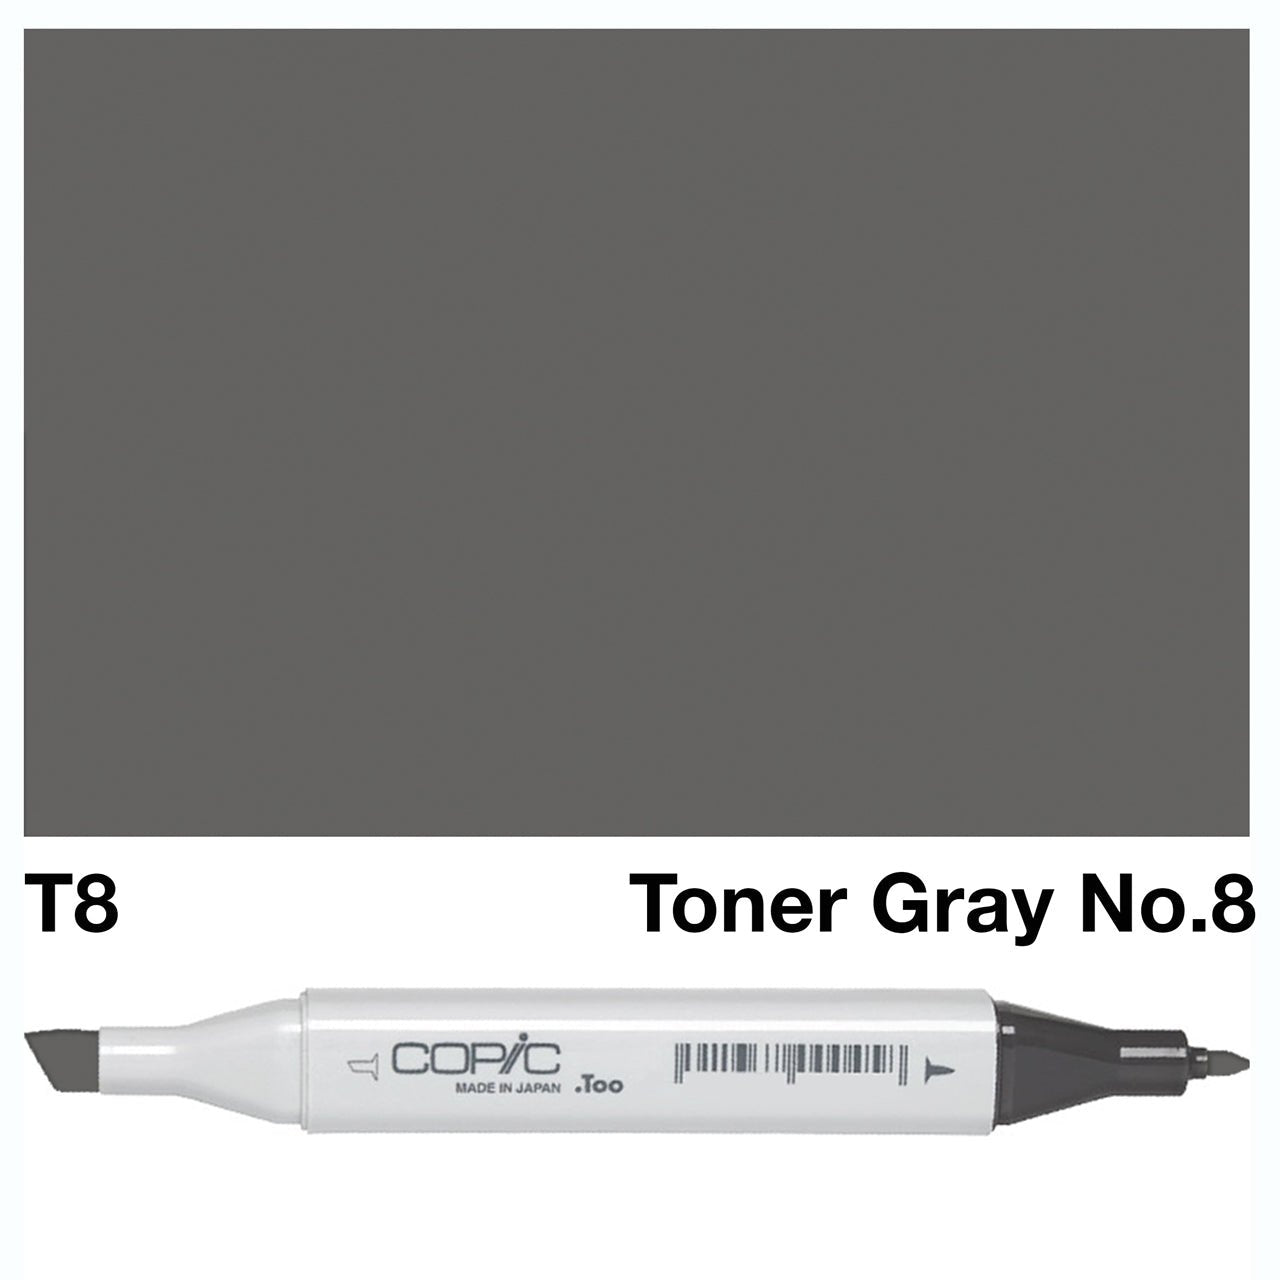 Copic Classic Marker T8 Toner Gray No.8 - theartshop.com.au